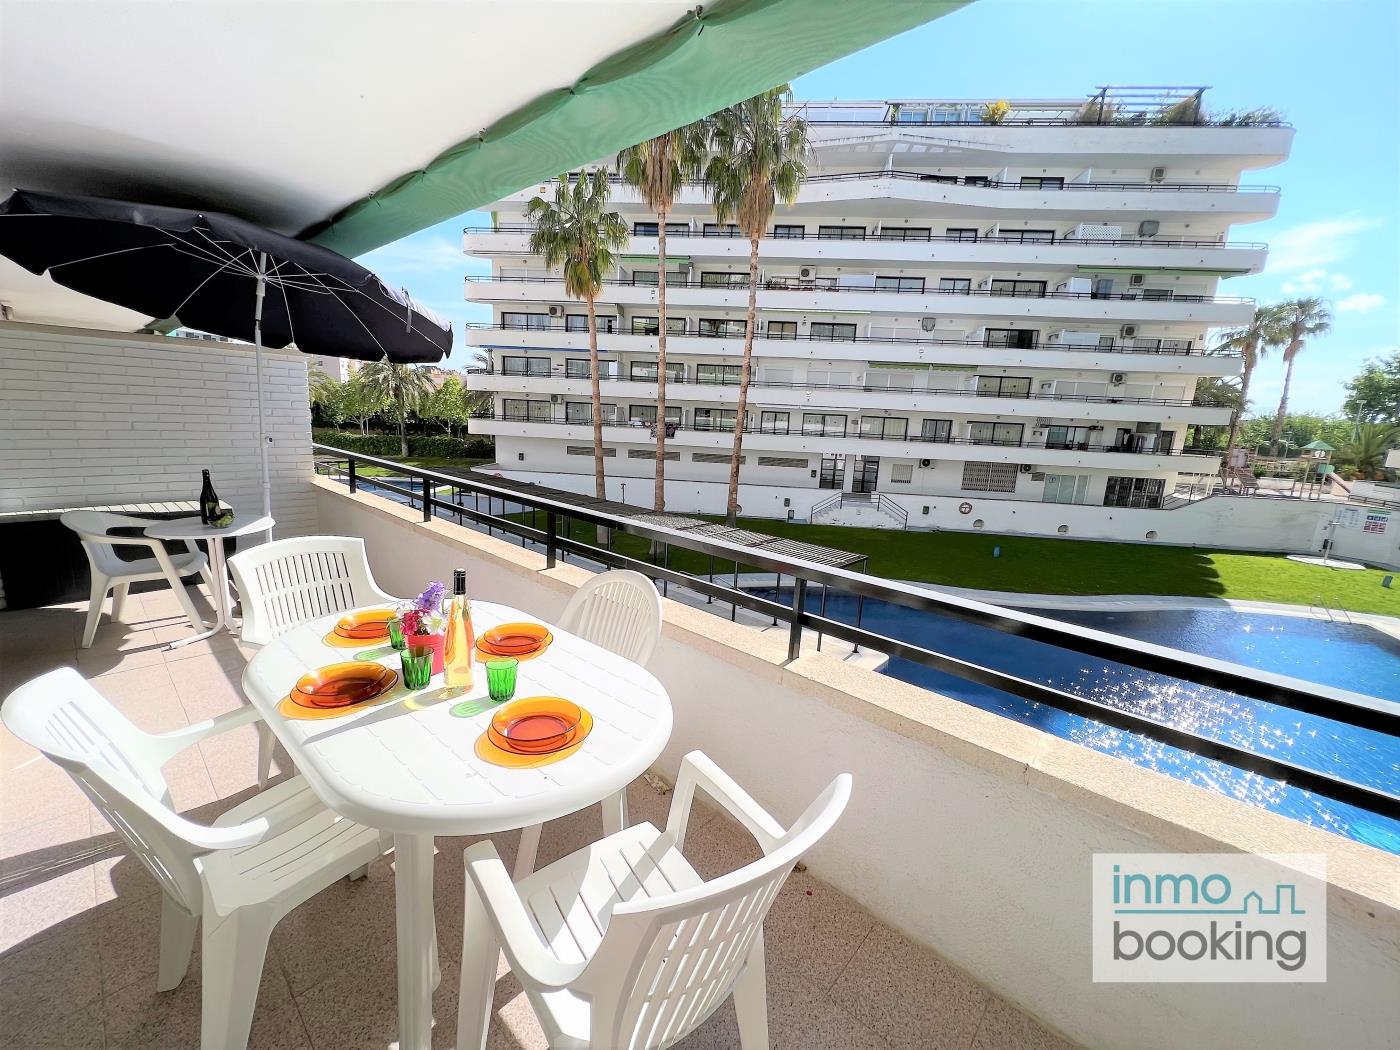 InmoBooking Cannes Apartments,très bien situé et piscine à salou